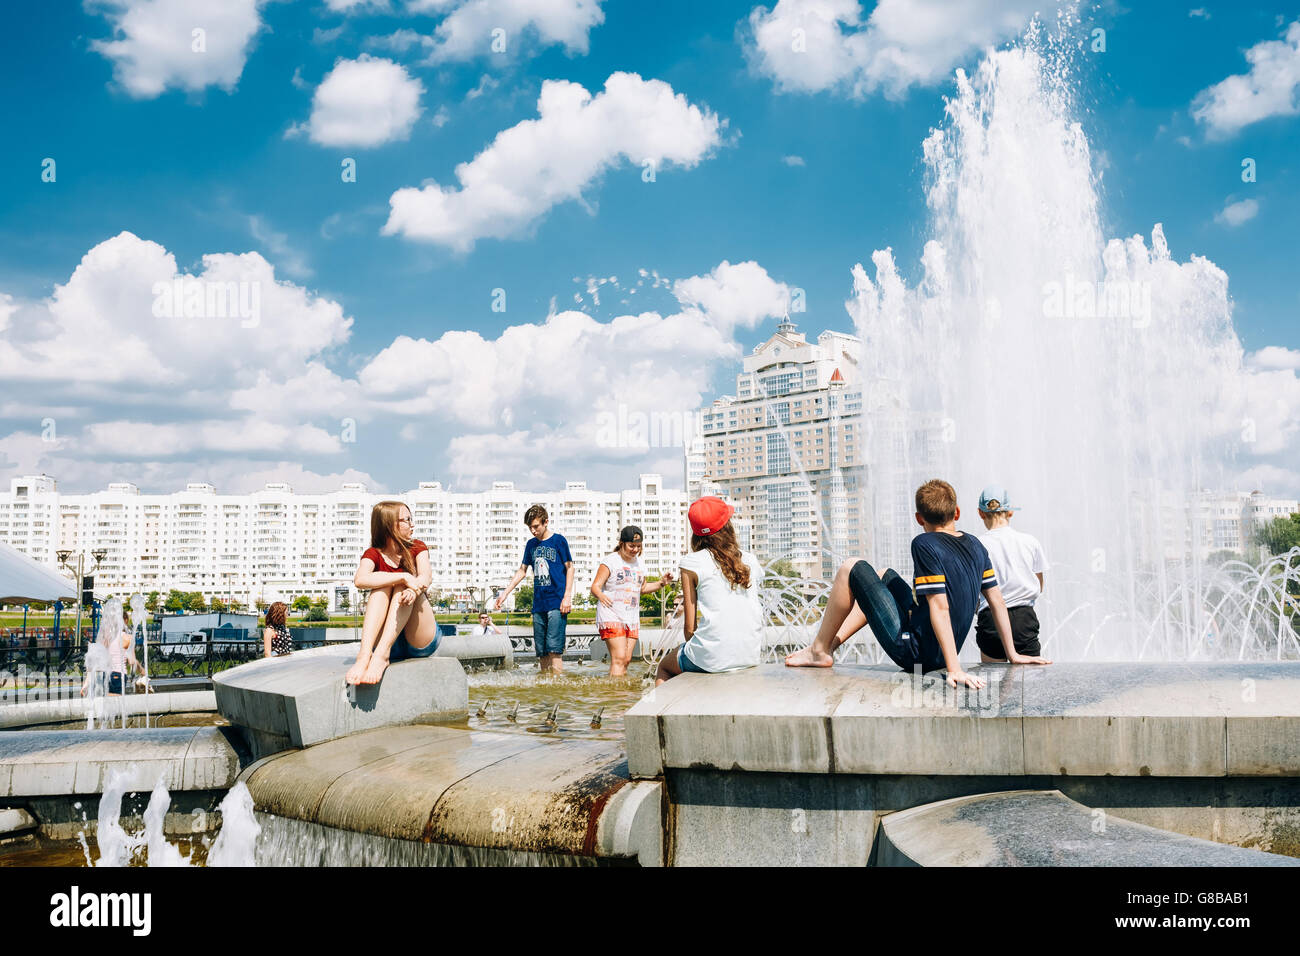 Minsk, Bielorussia - Giugno 2, 2015: Giovani Sit in appoggio vicino alla fontana nella calura estiva. Nemiga Ditrict a Minsk, Bielorussia Foto Stock